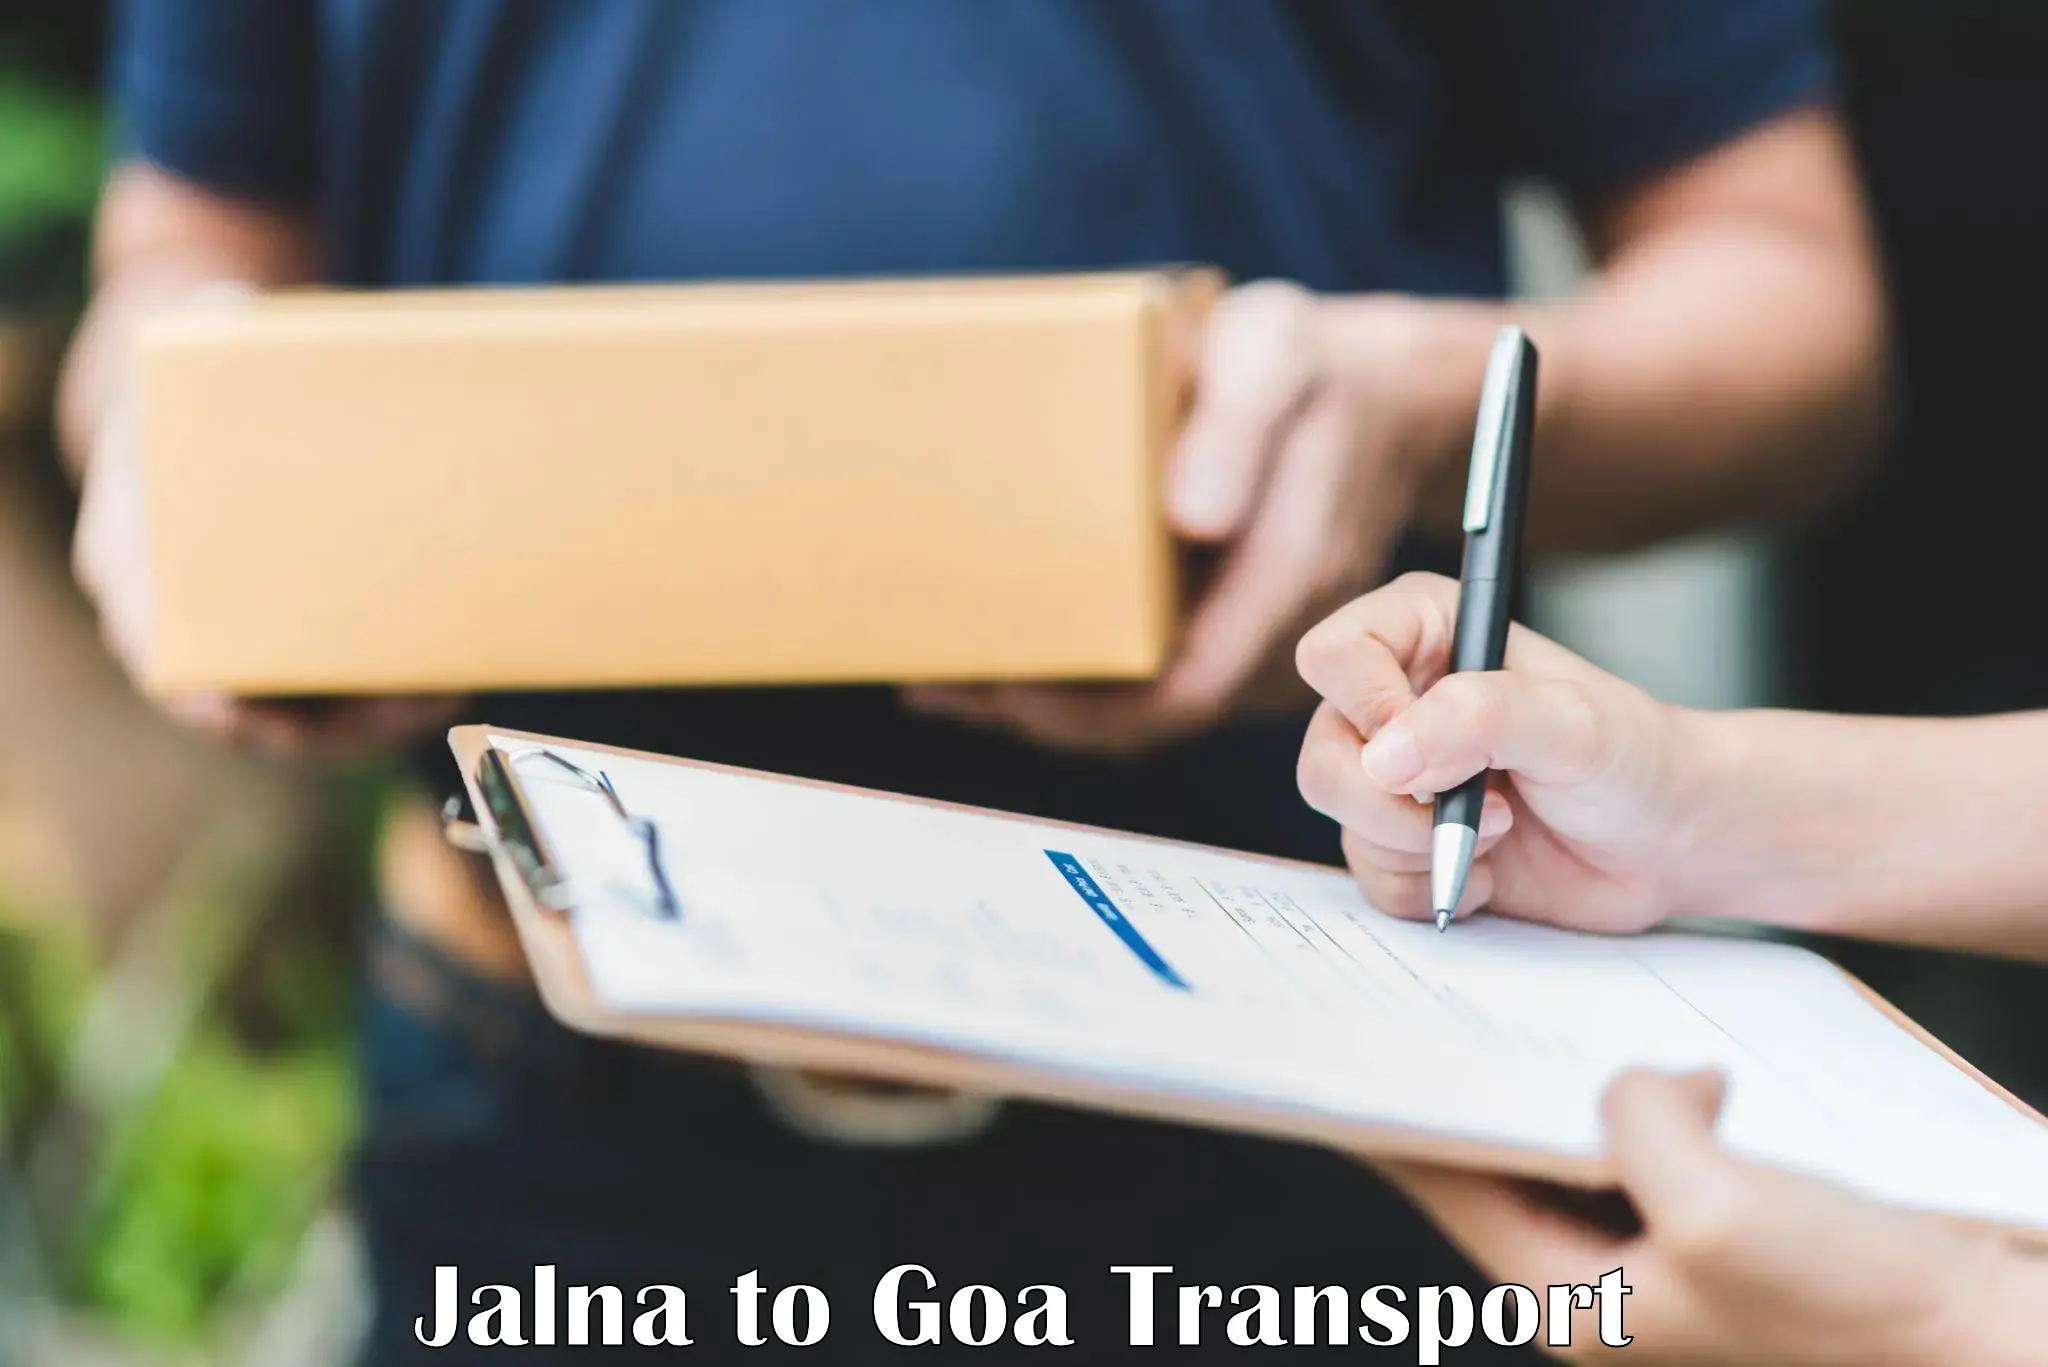 Daily parcel service transport Jalna to Goa